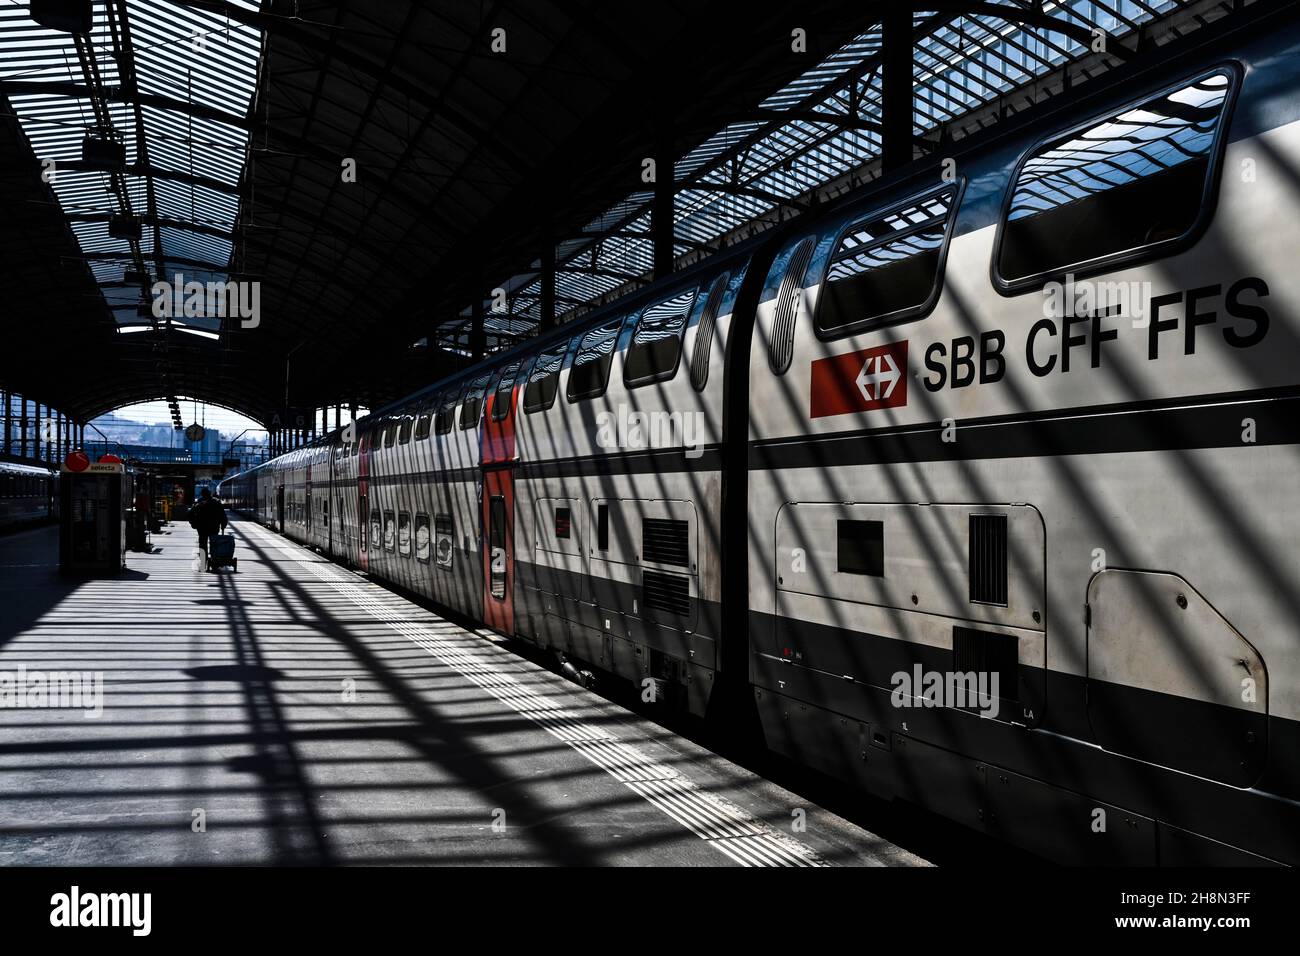 SBB Personenzug mit Schriftzug SBB-CFF-FFS Luzern, Schweiz Stockfoto